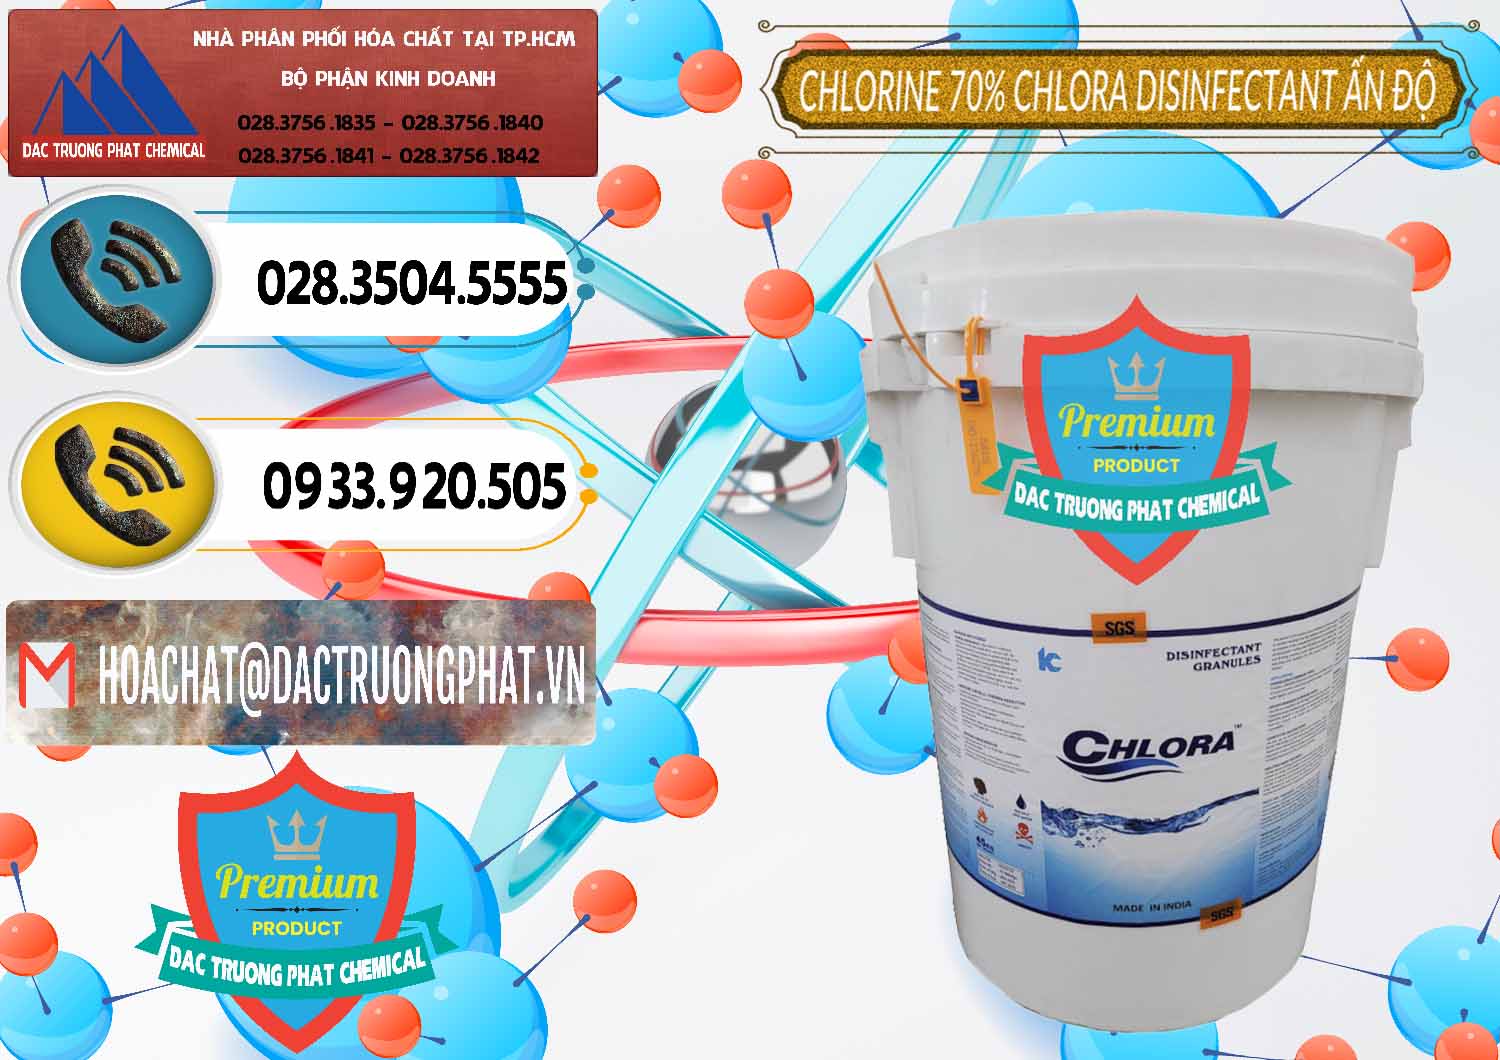 Nơi kinh doanh - bán Chlorine – Clorin 70% Chlora Disinfectant Ấn Độ India - 0213 - Cty nhập khẩu & cung cấp hóa chất tại TP.HCM - hoachatdetnhuom.vn